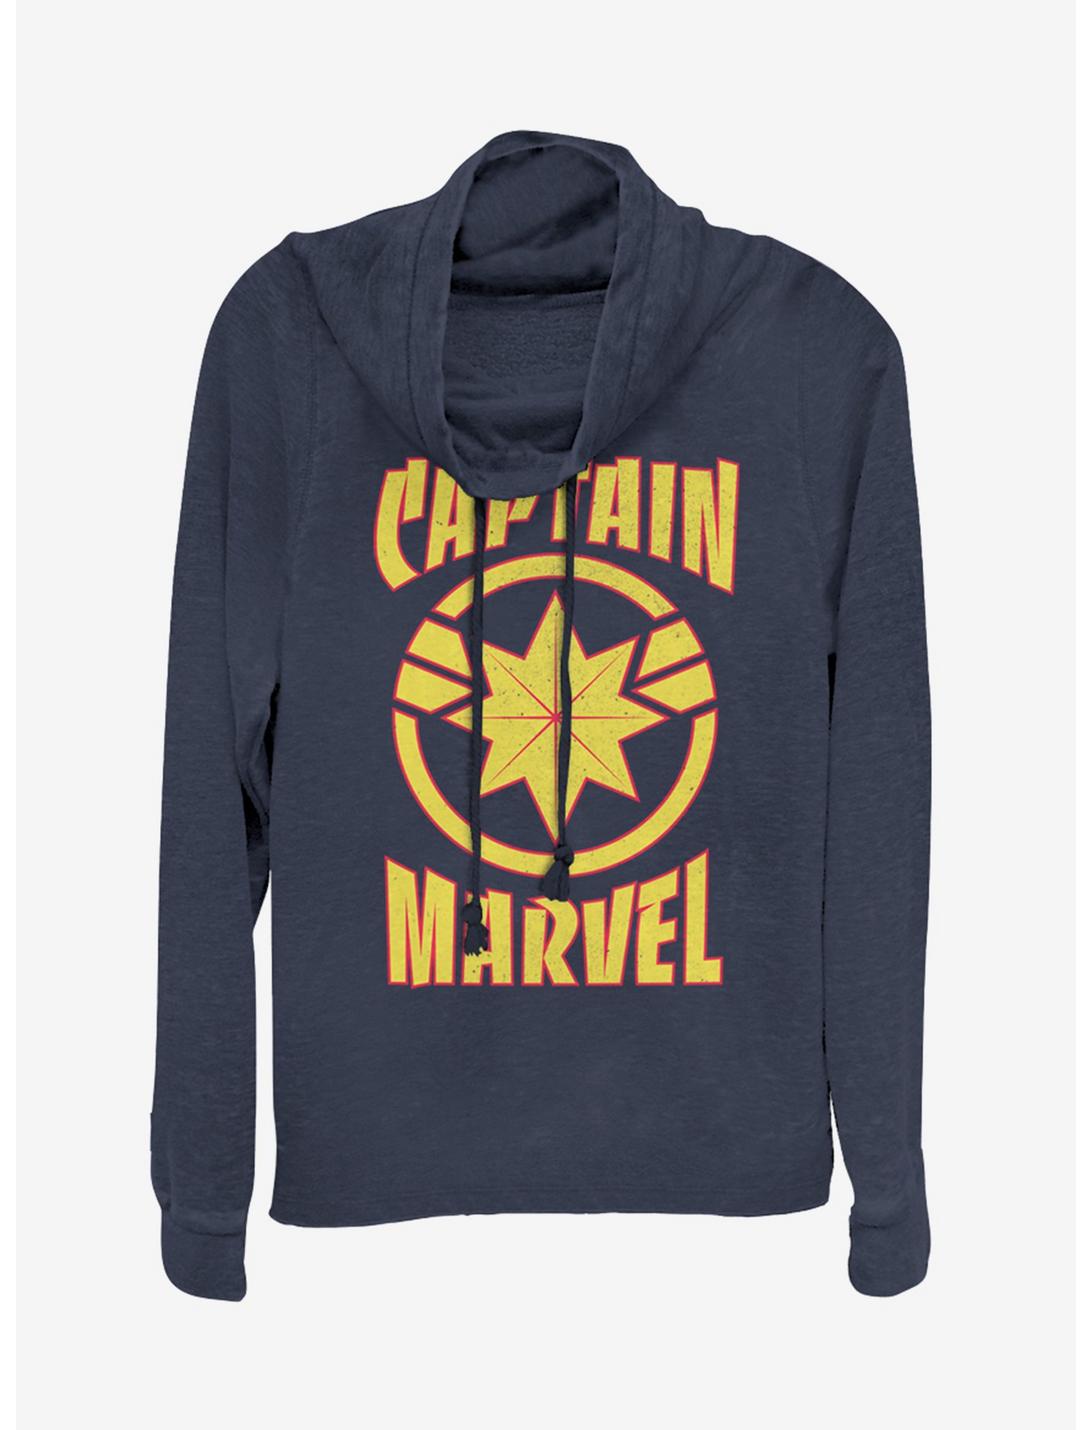 Marvel Captain Marvel Marvel Star Cowlneck Long-Sleeve Girls Top, NAVY, hi-res